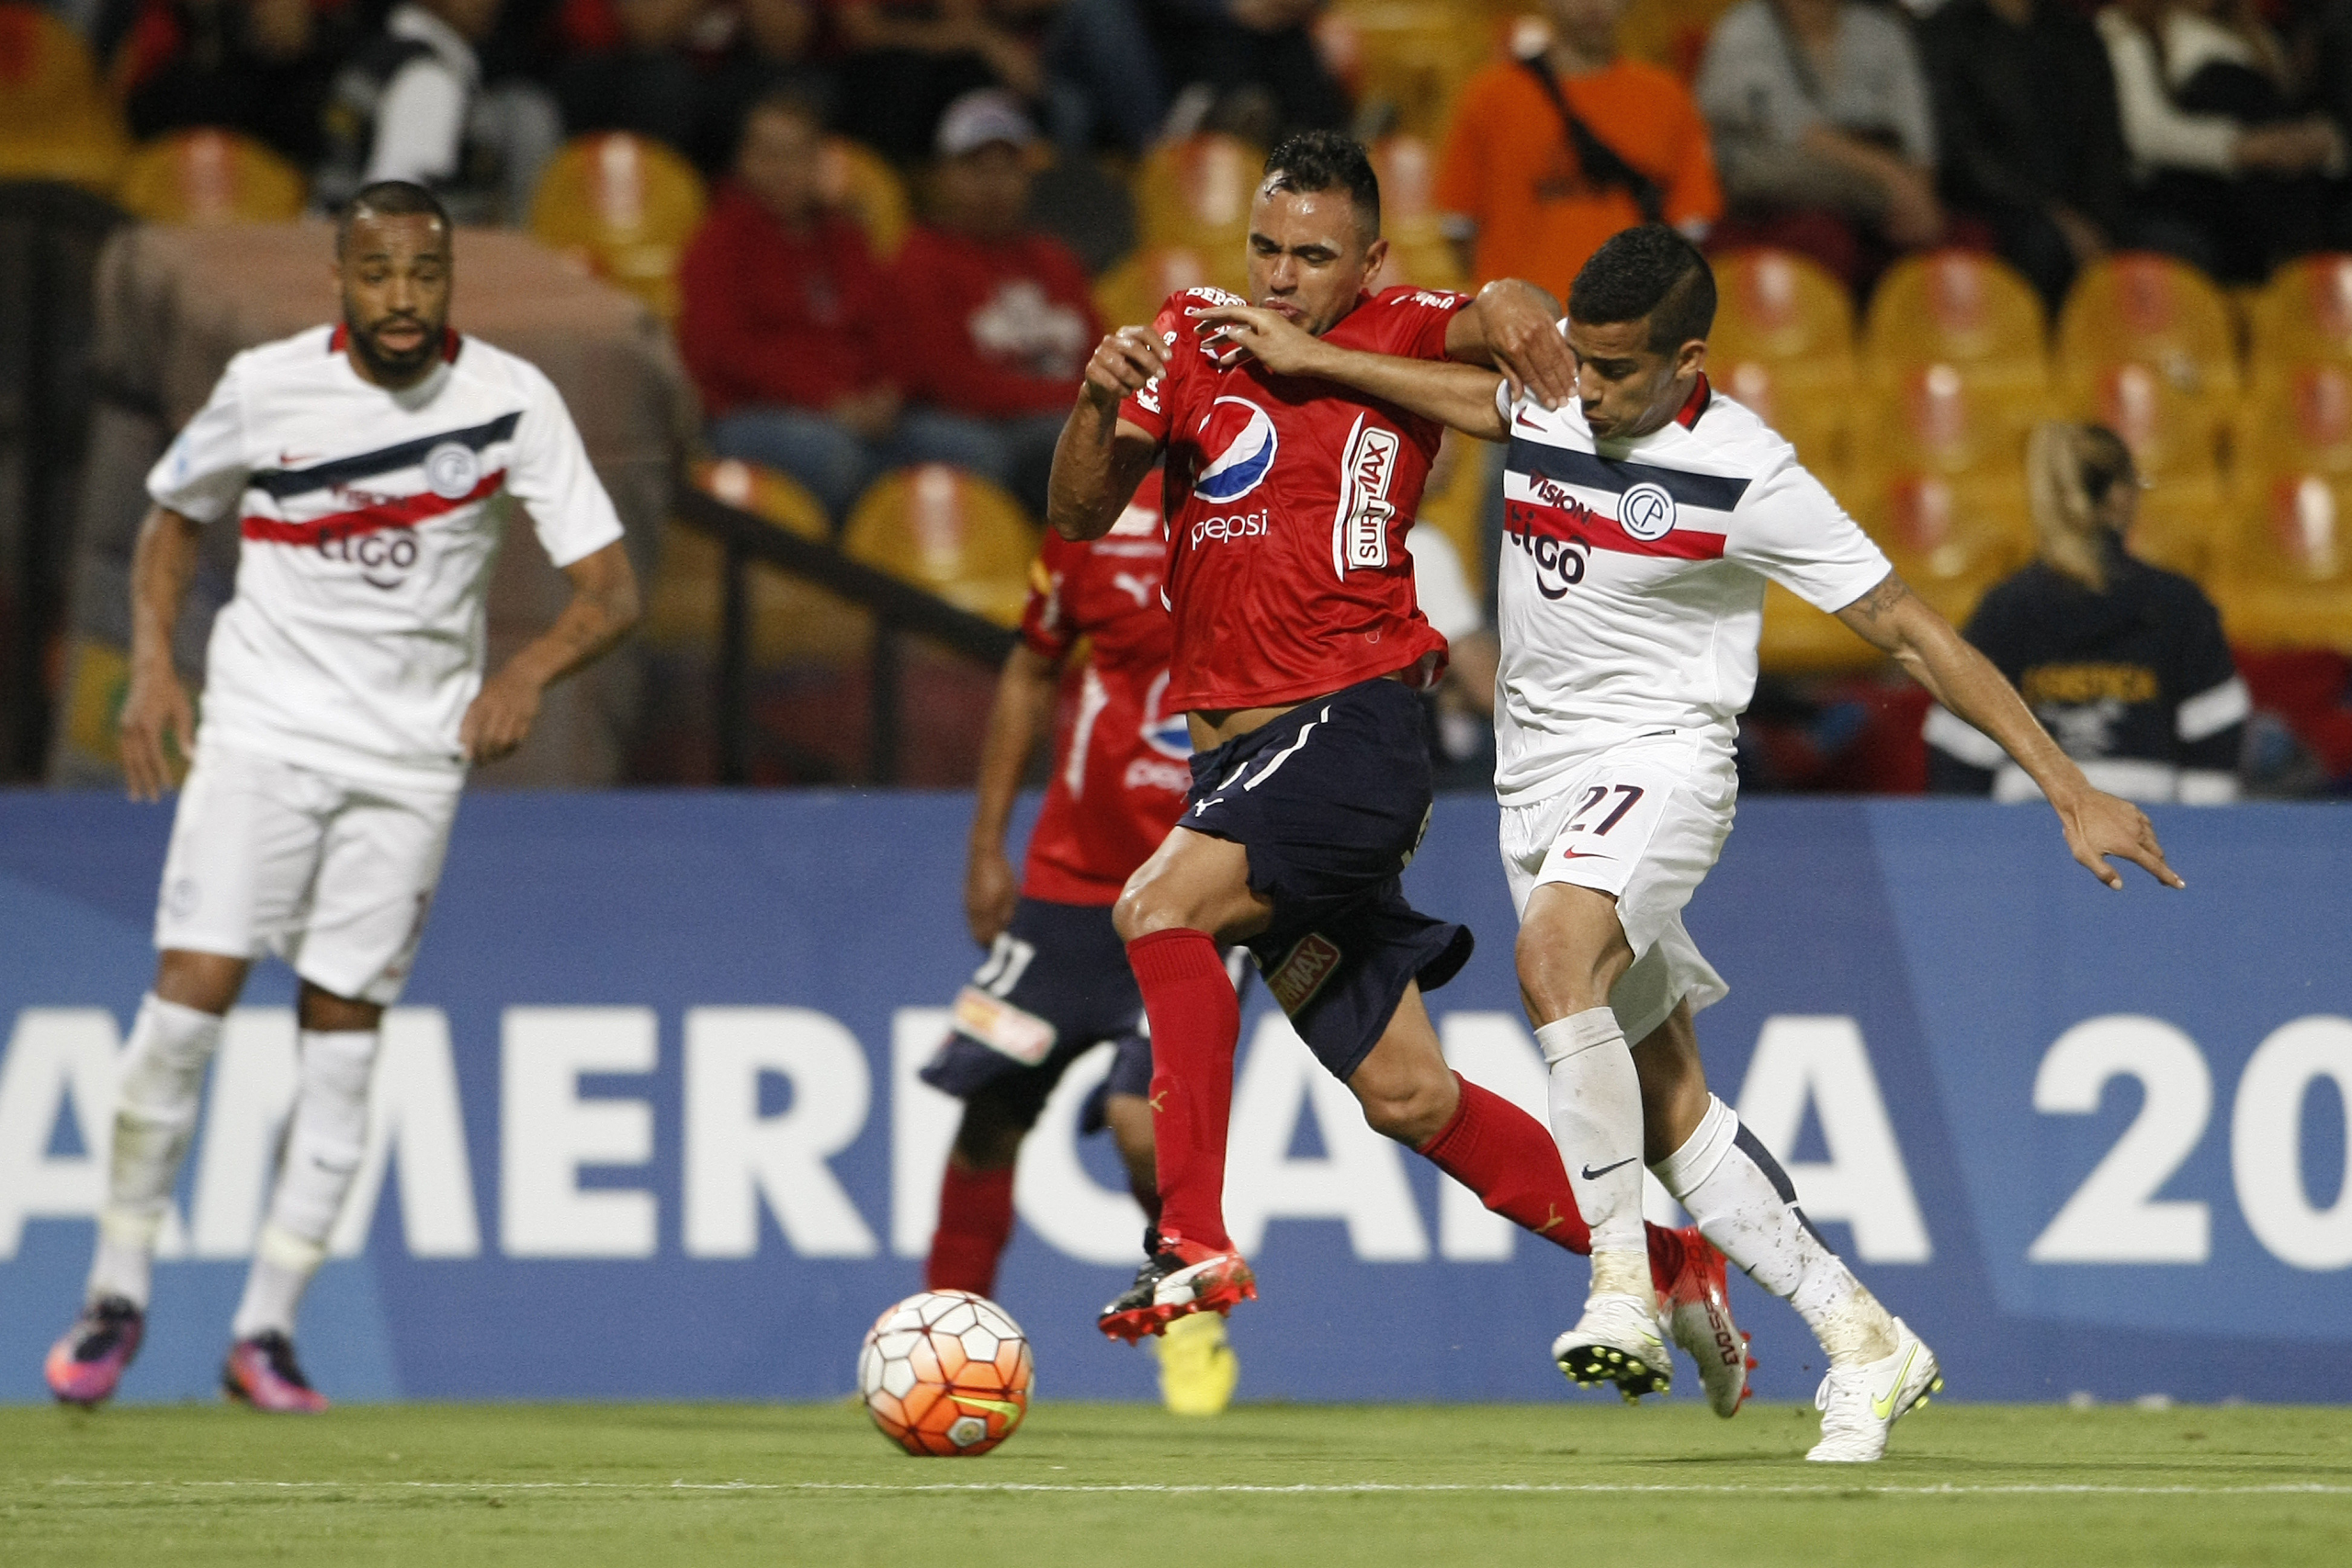 wp image 441976 scaled - Cerro Porteño y Medellín se juegan en Asunción el pase a semifinales